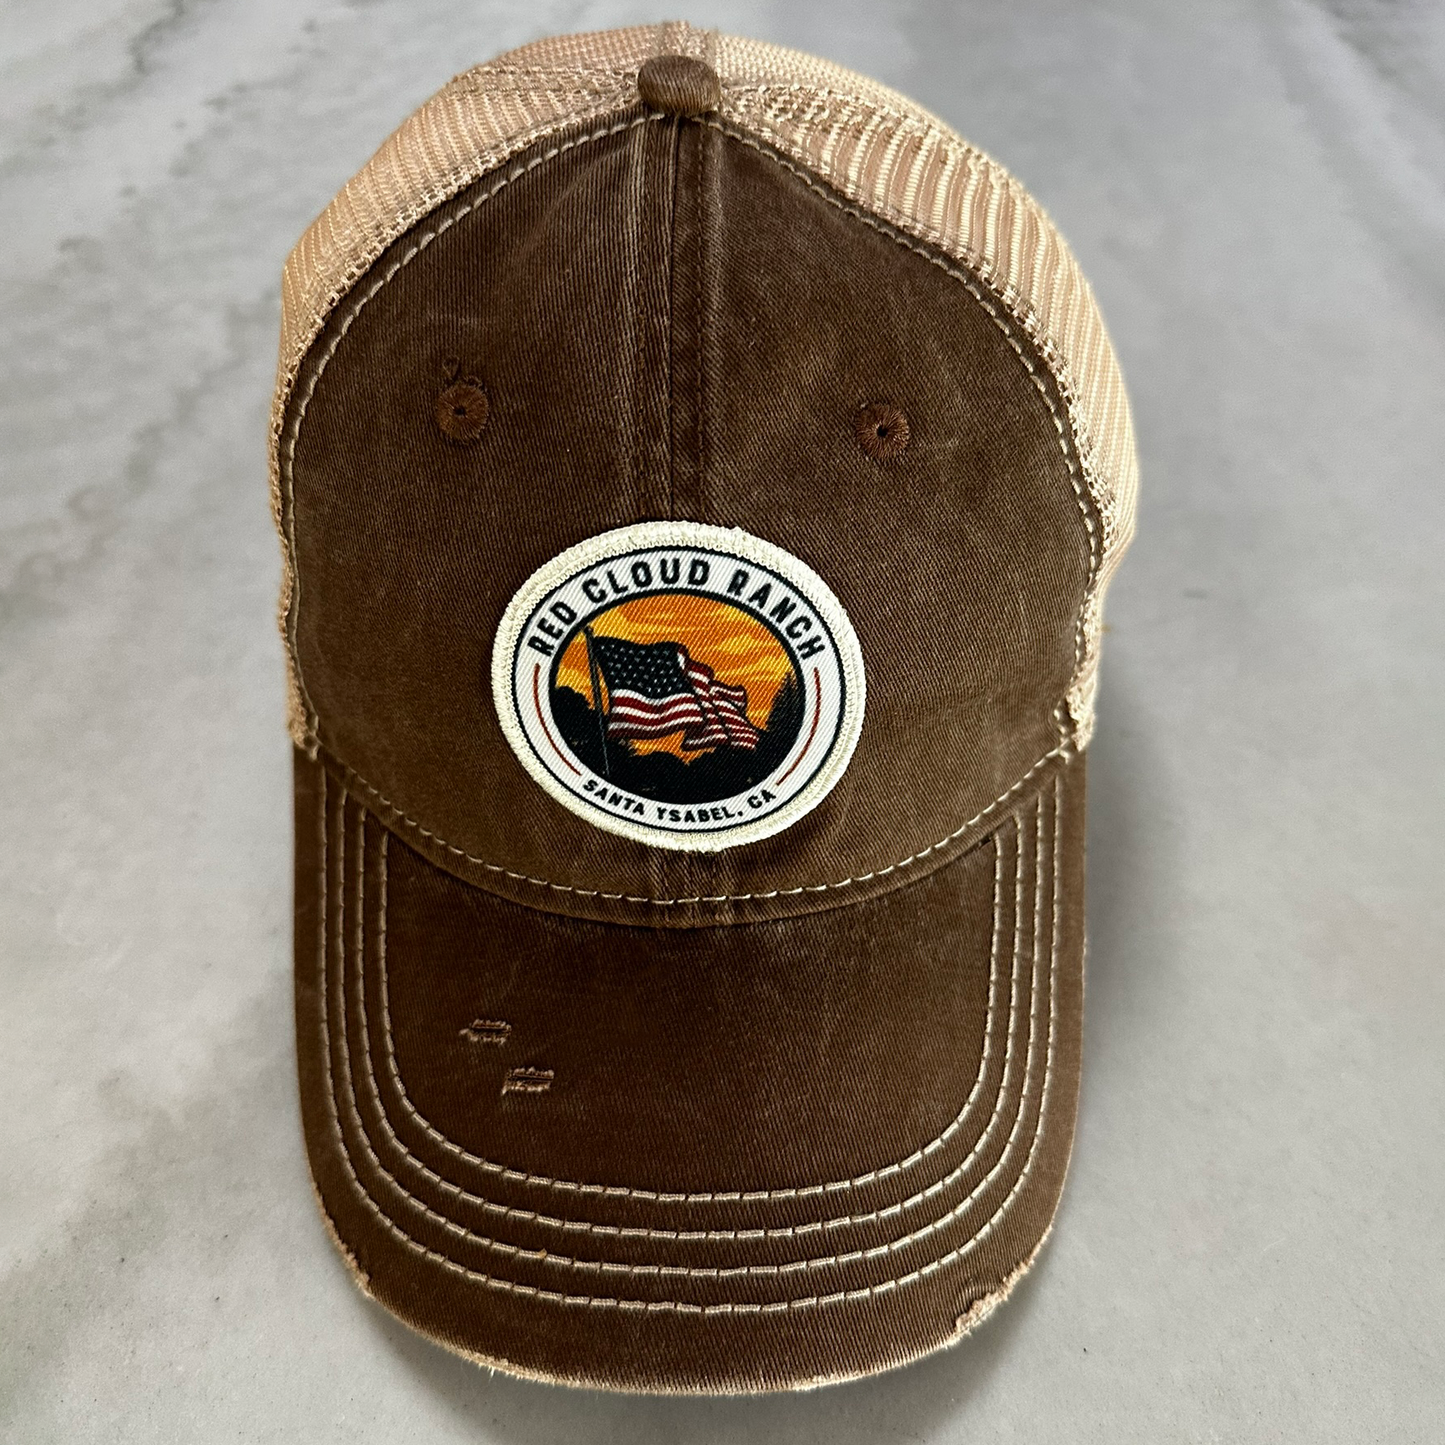 Vintage Trucker Hat